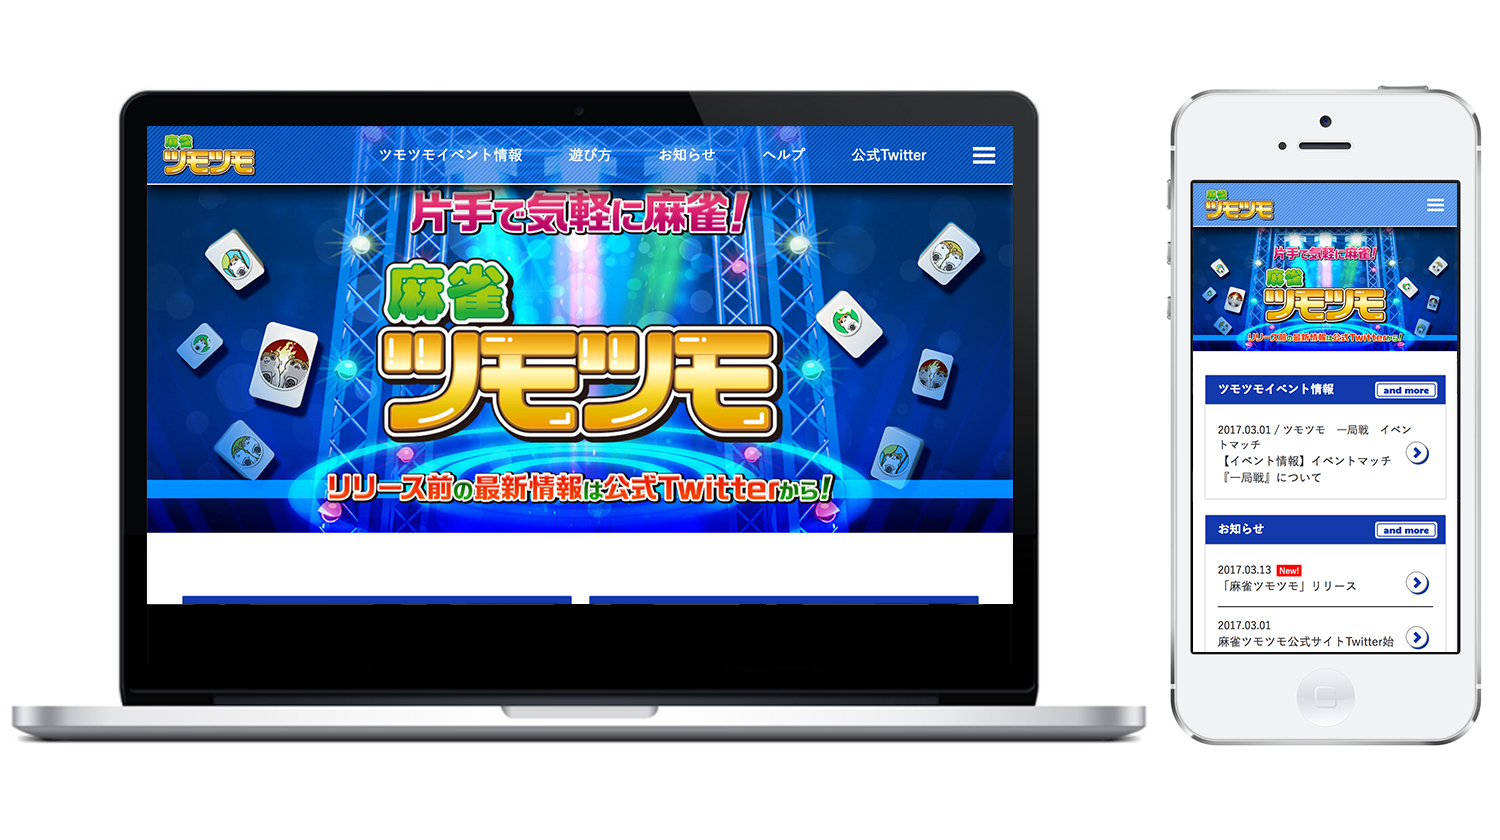 Appbankよりリリースされたアプリ 麻雀ツモツモ の情報解禁 麻雀ファンクラブをオープン Skiyakiのプレスリリース